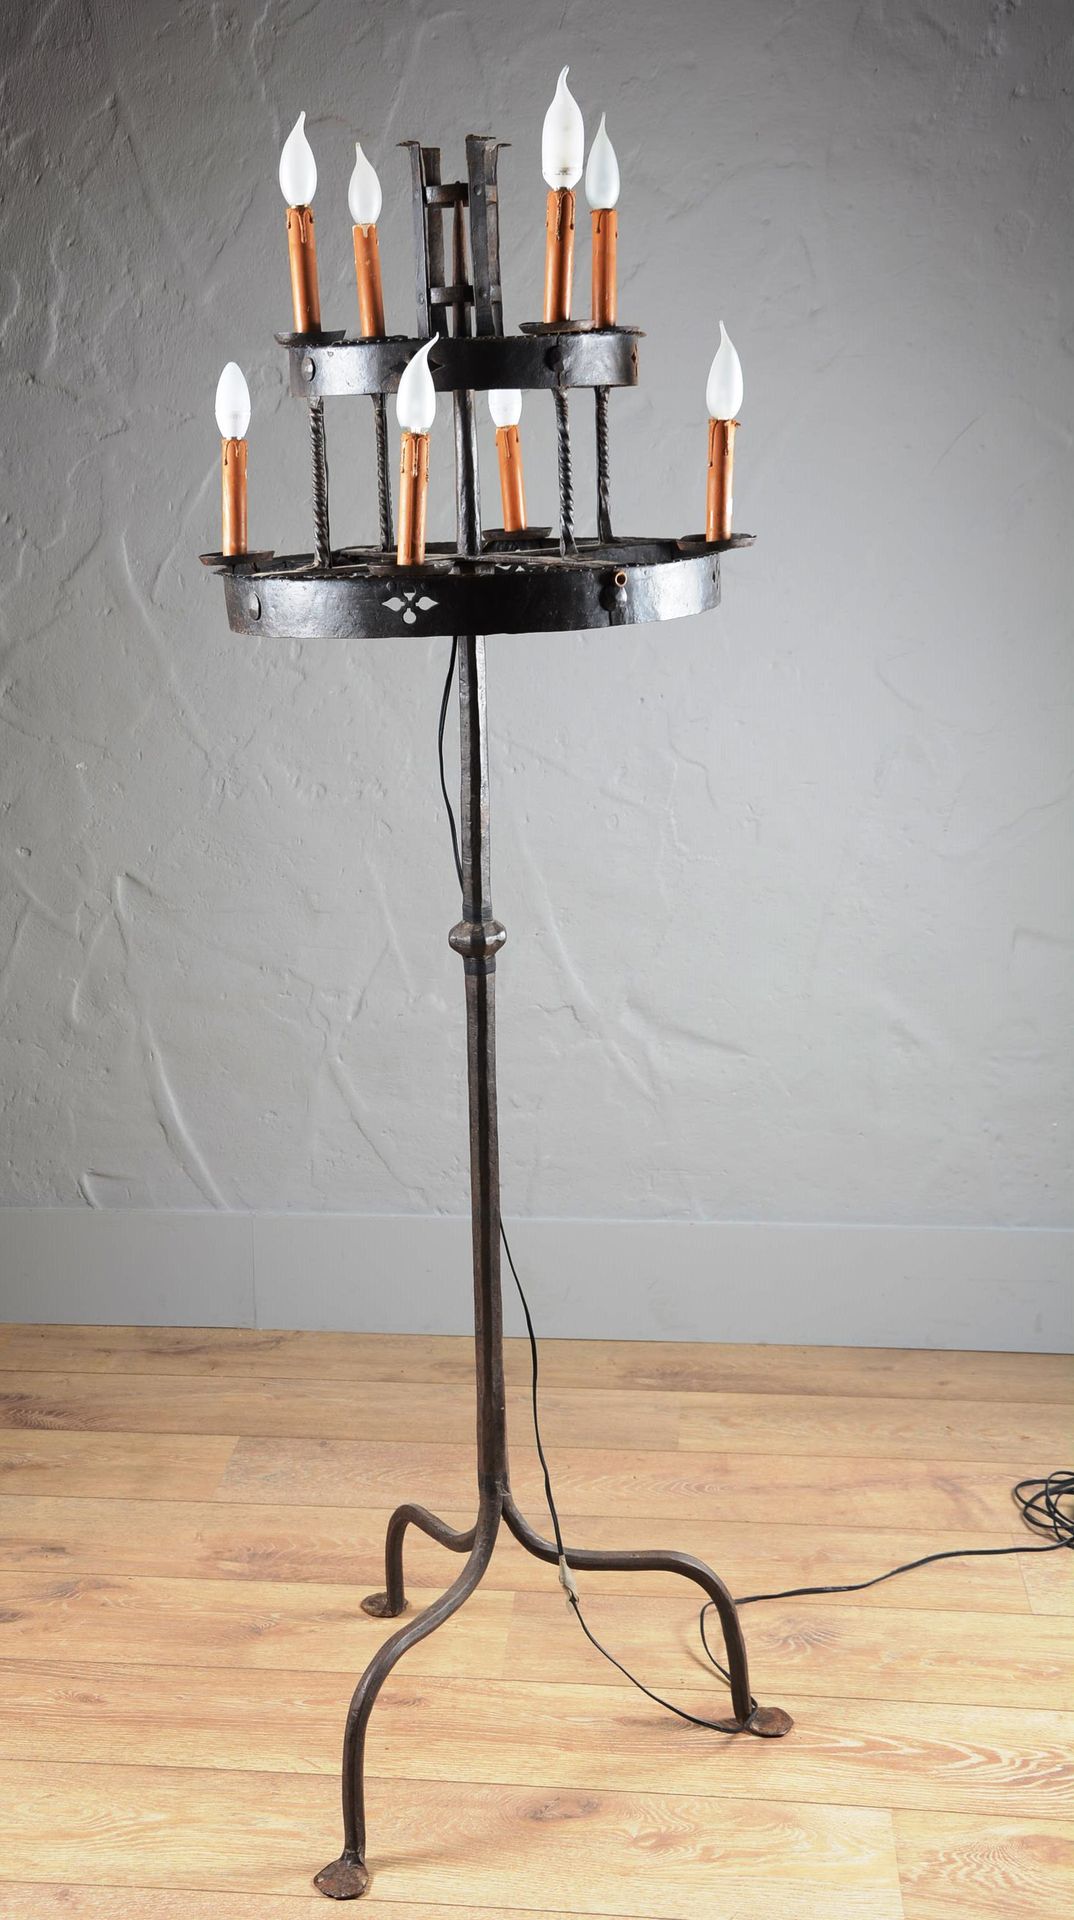 Haut candélabre en fer forgé électrifié. High candelabra in wrought iron.

With &hellip;